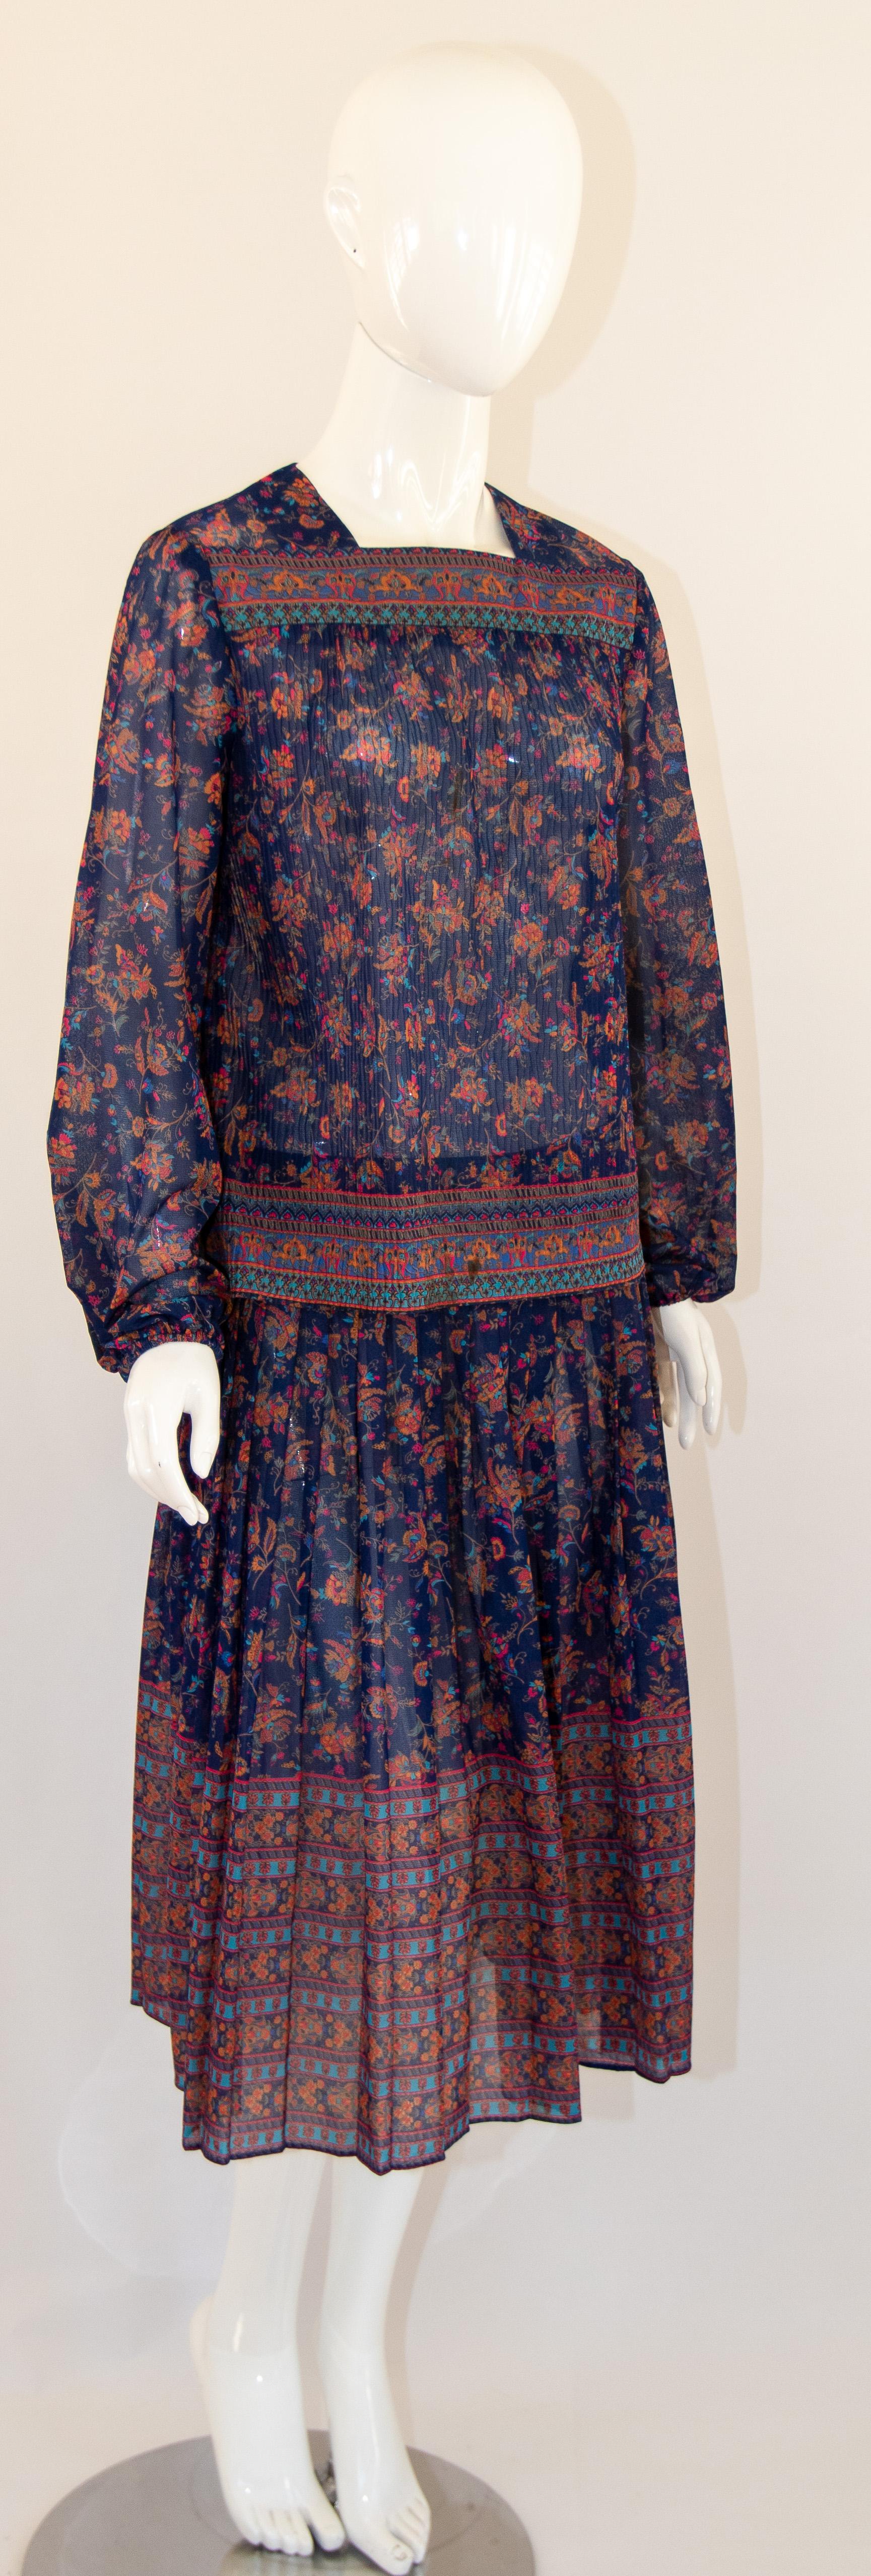 1970s Vintage Bohemian Floral Printed Dress Miss Magnin at I. Magnin For Sale 13